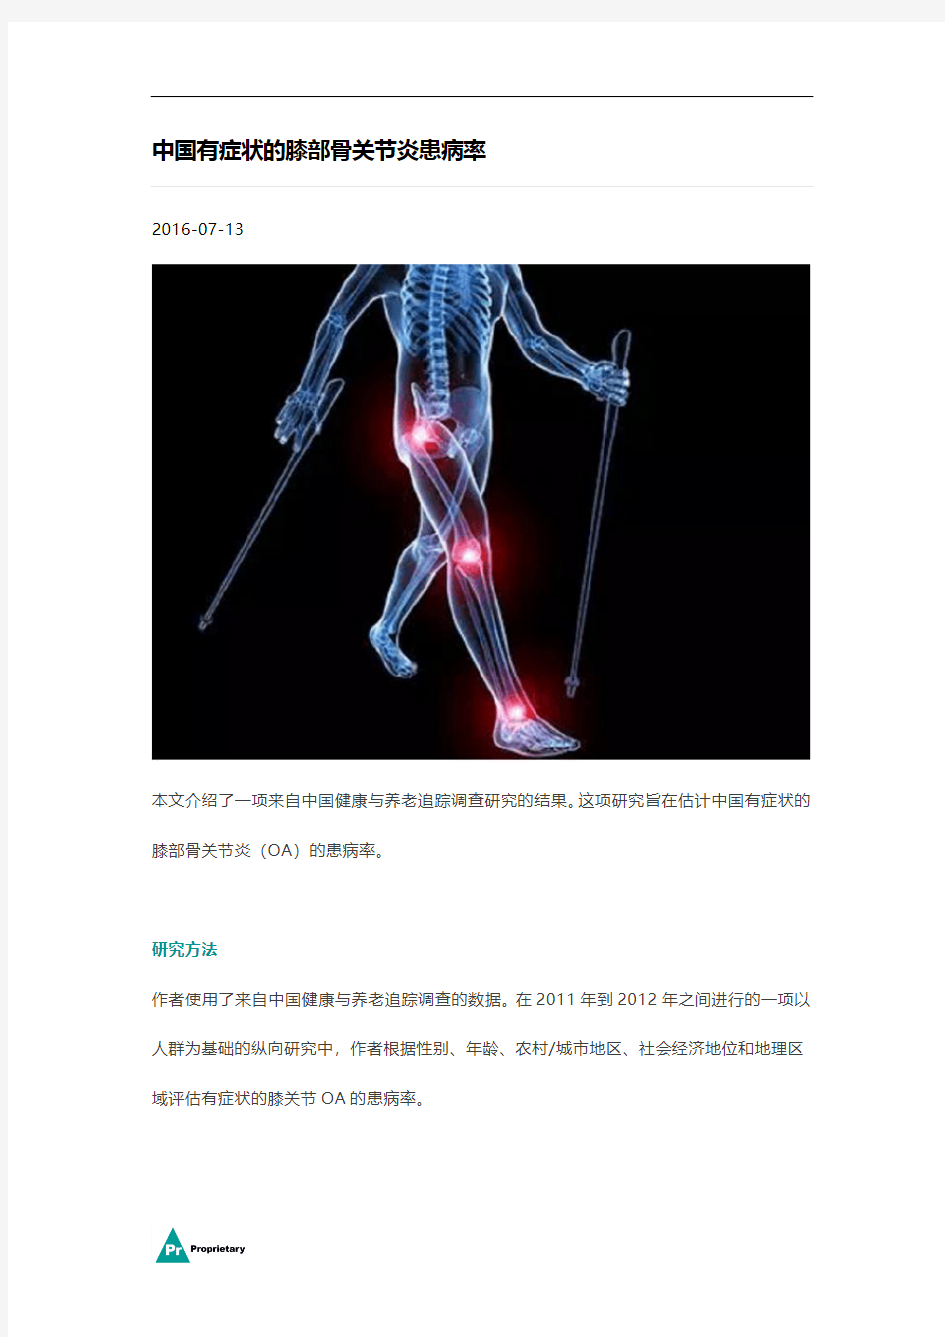 中国有症状的膝部骨关节炎患病率